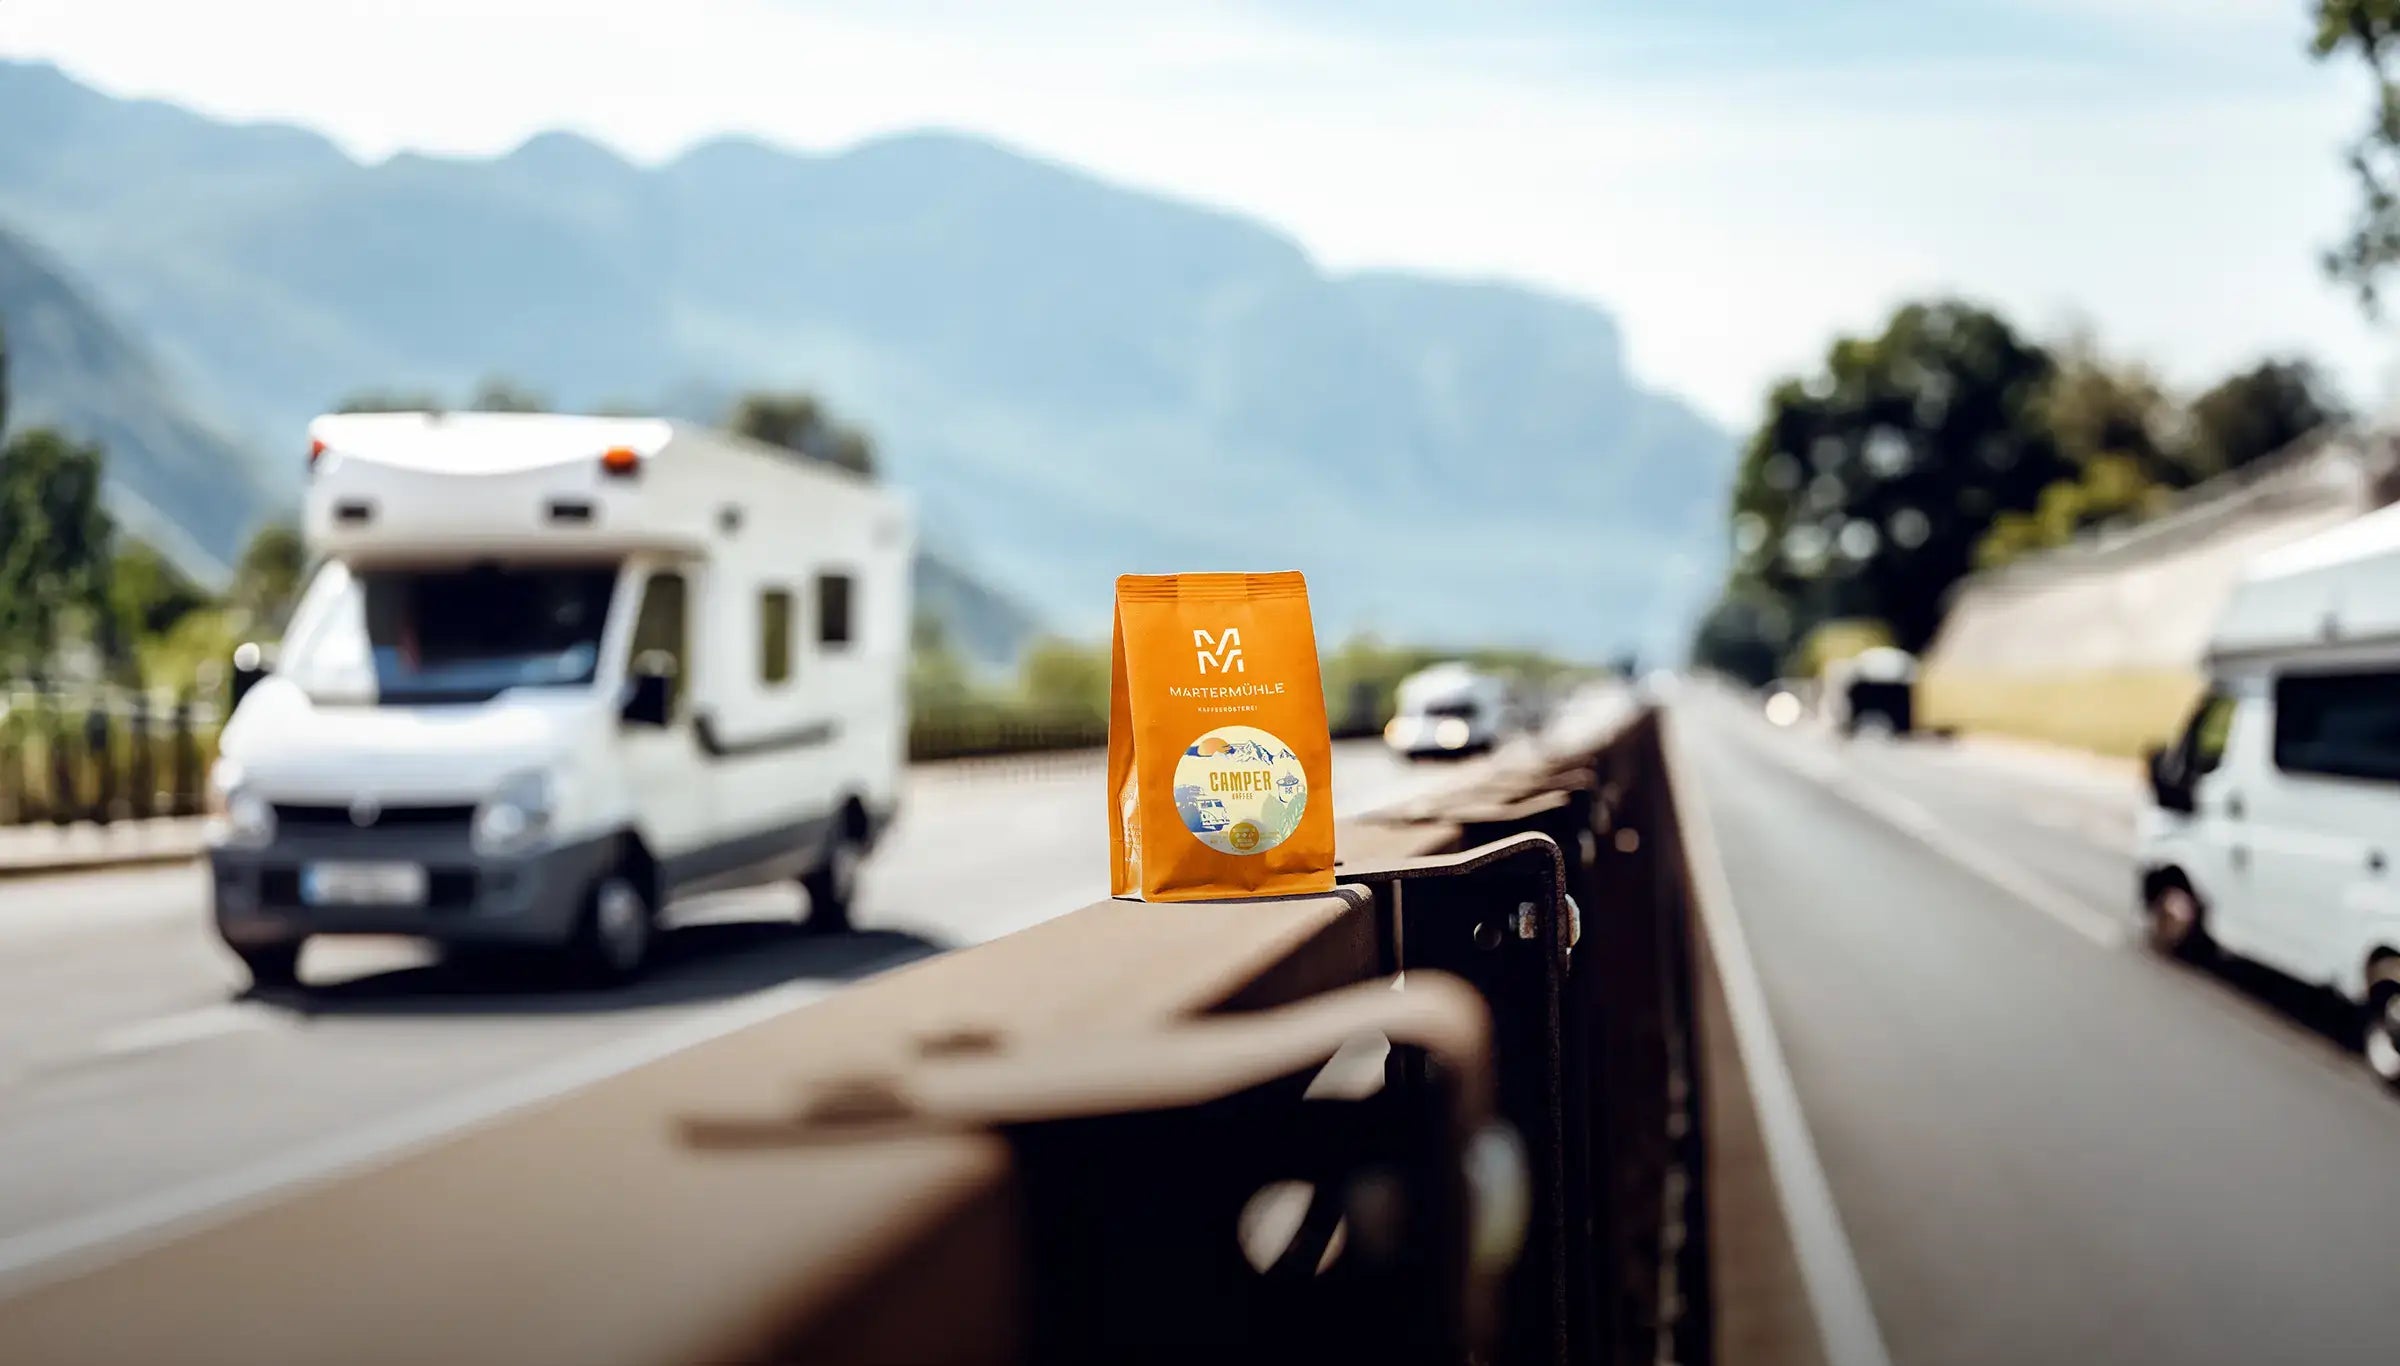 Eine Packung Camper Kaffee der Kaffeerösterei Martermühle auf der Leitplanke einer italienischen Autobahn.